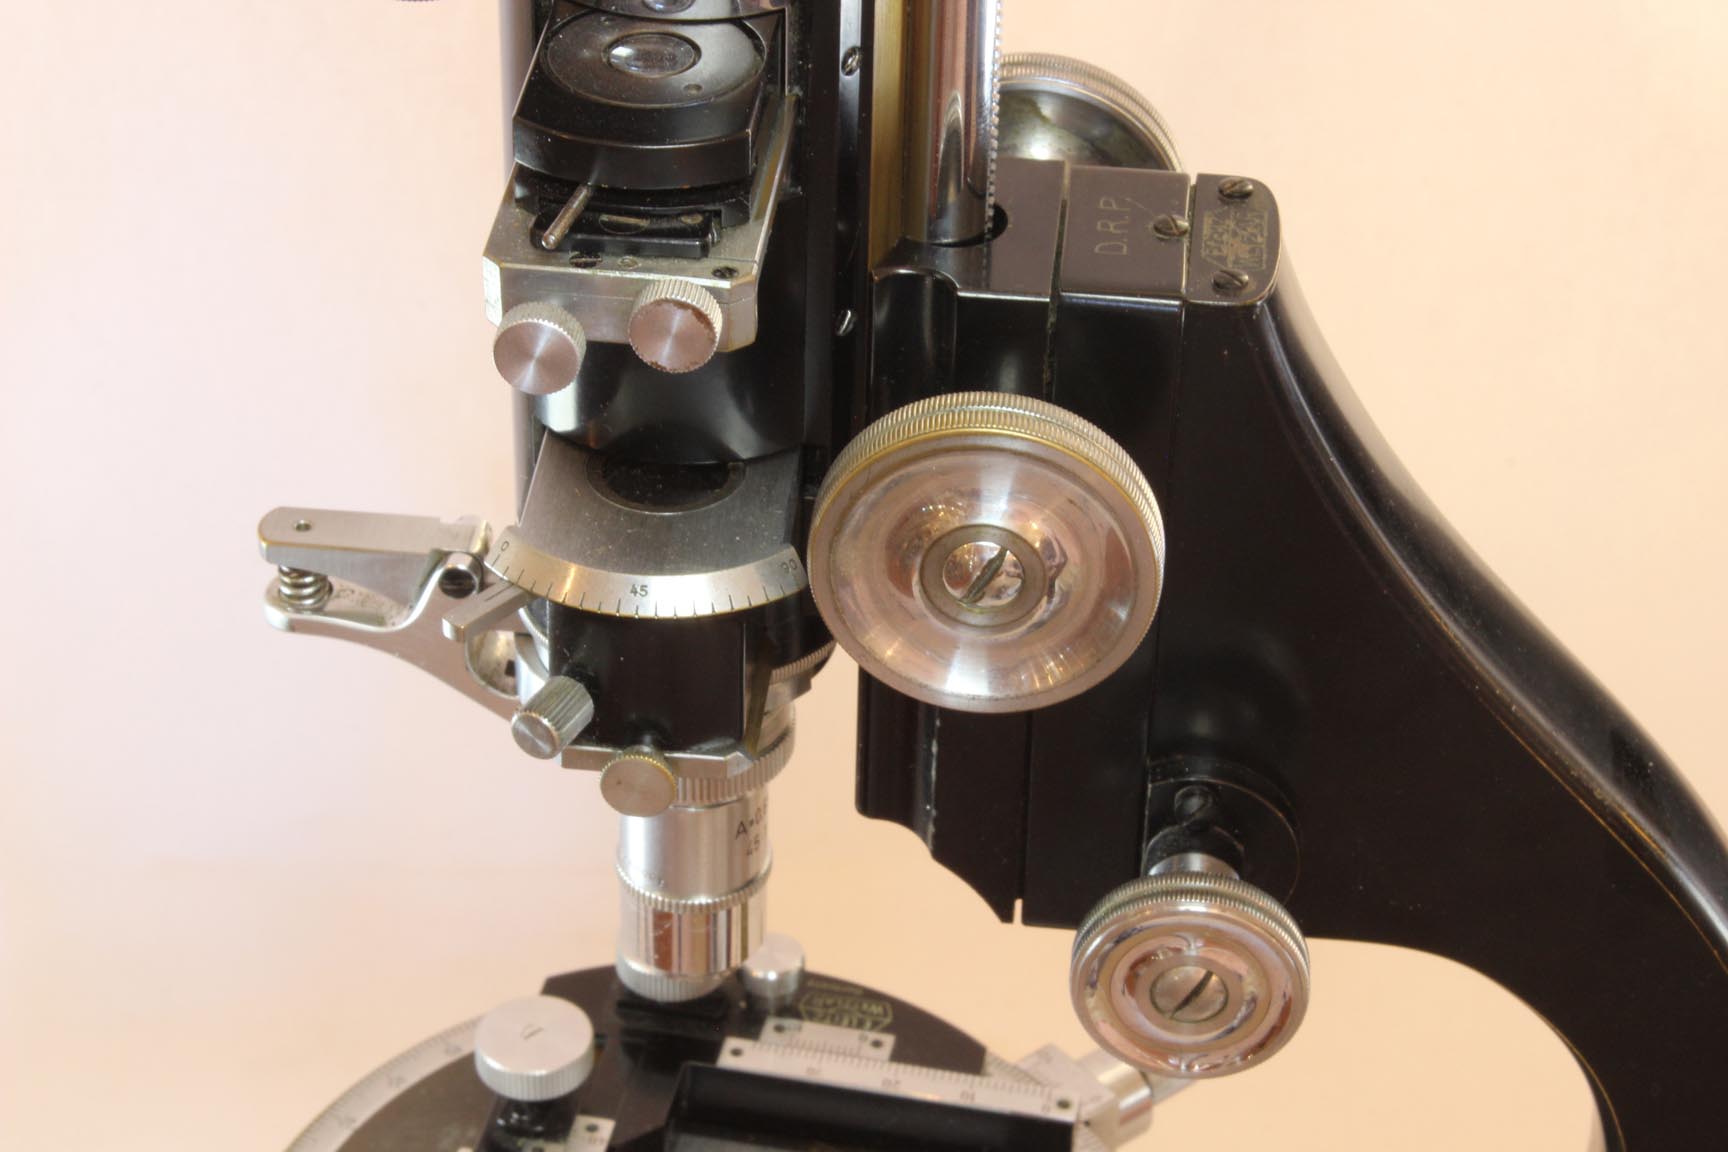 Leitz pol scope analyzer and Bertrand lens